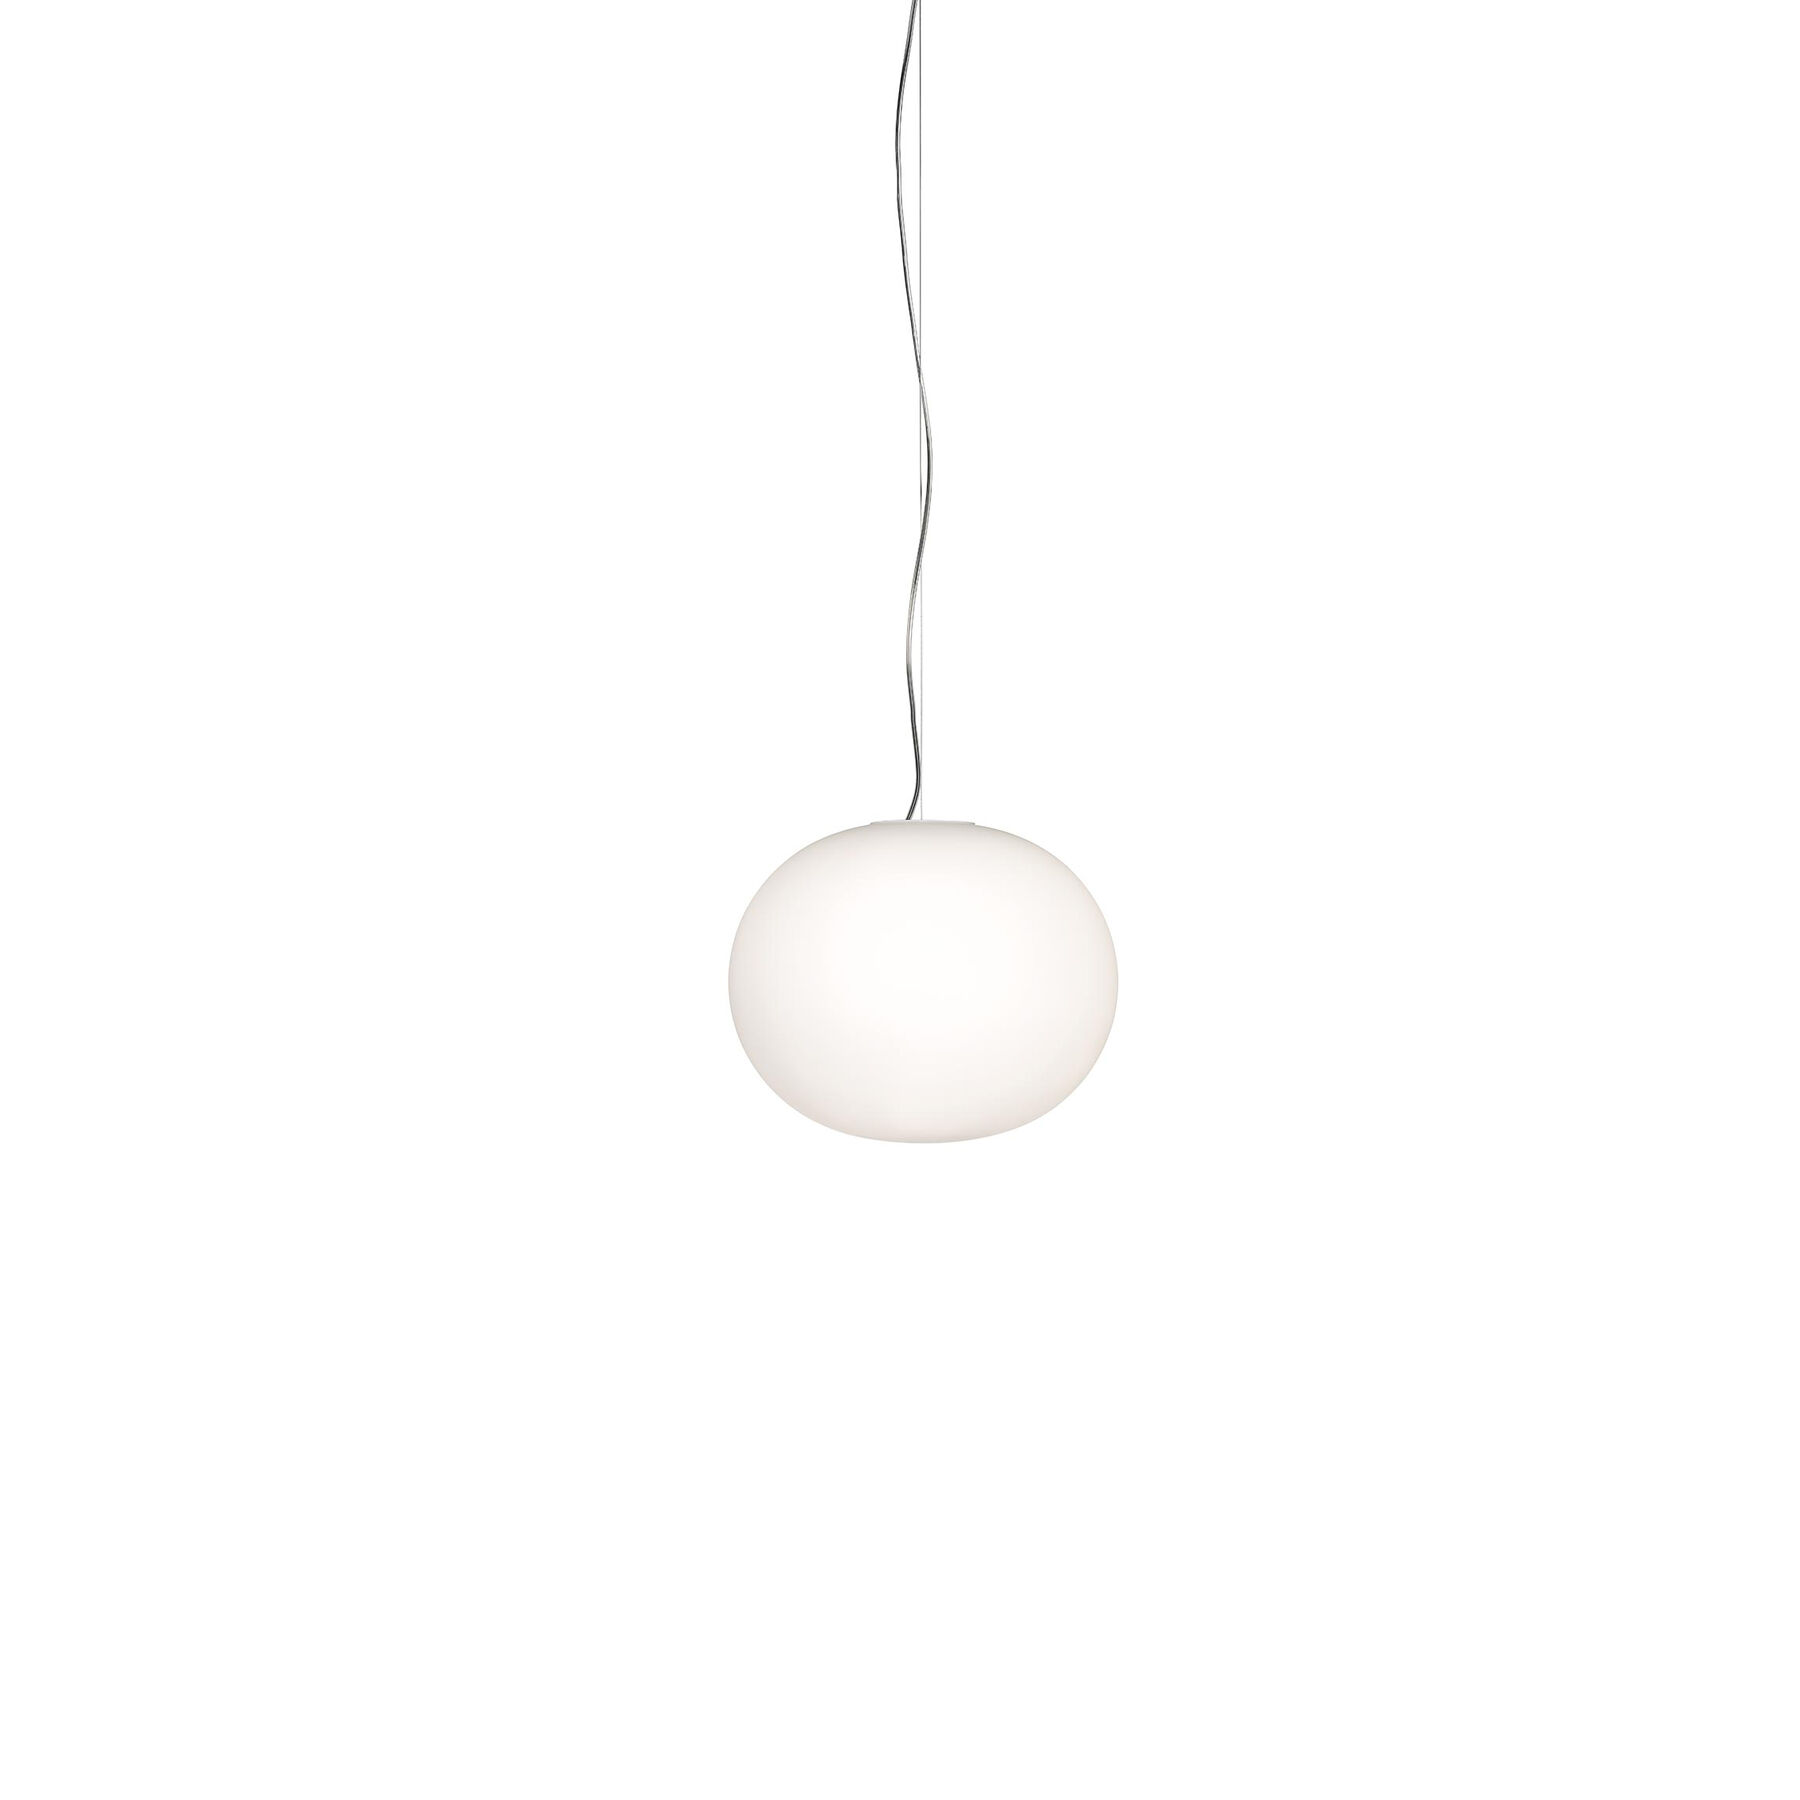 Купить Подвесной светильник Glo-Ball Suspension 1 в интернет-магазине roooms.ru